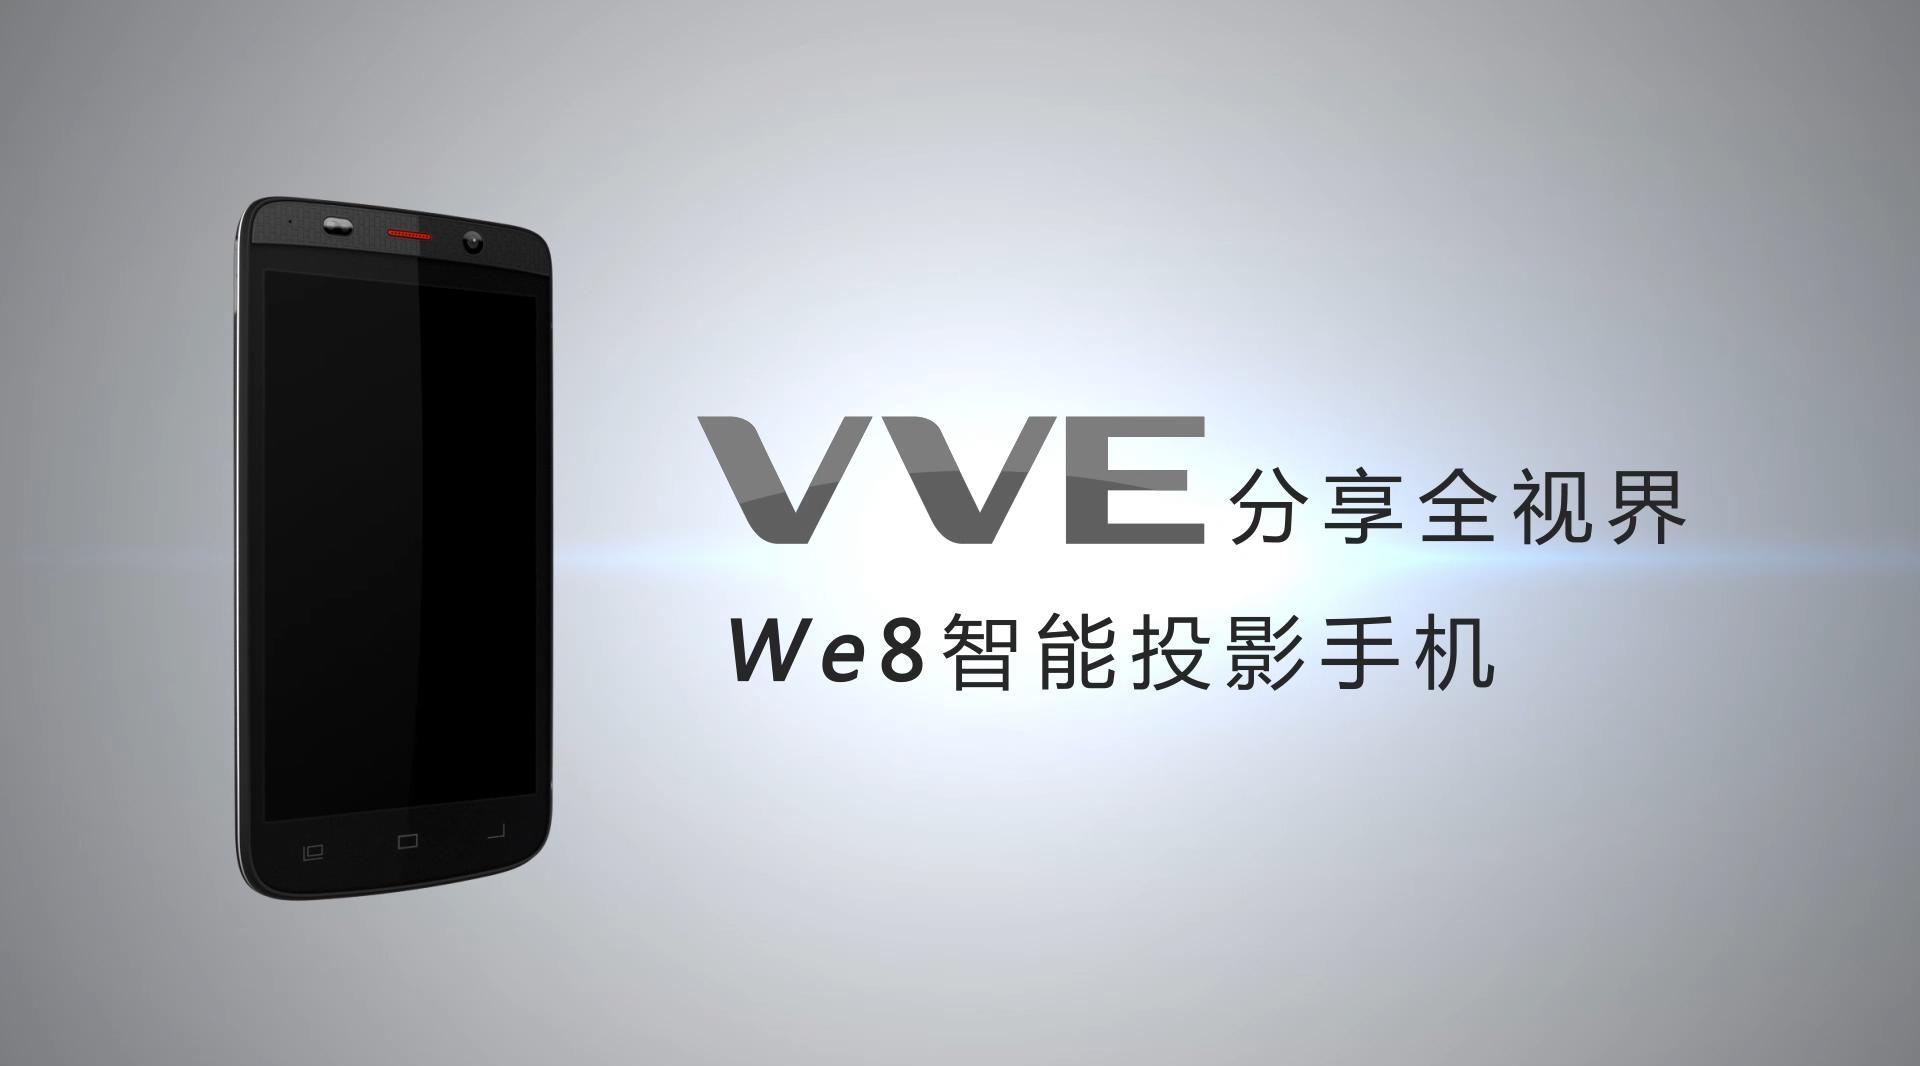 VVE8智能投影手机